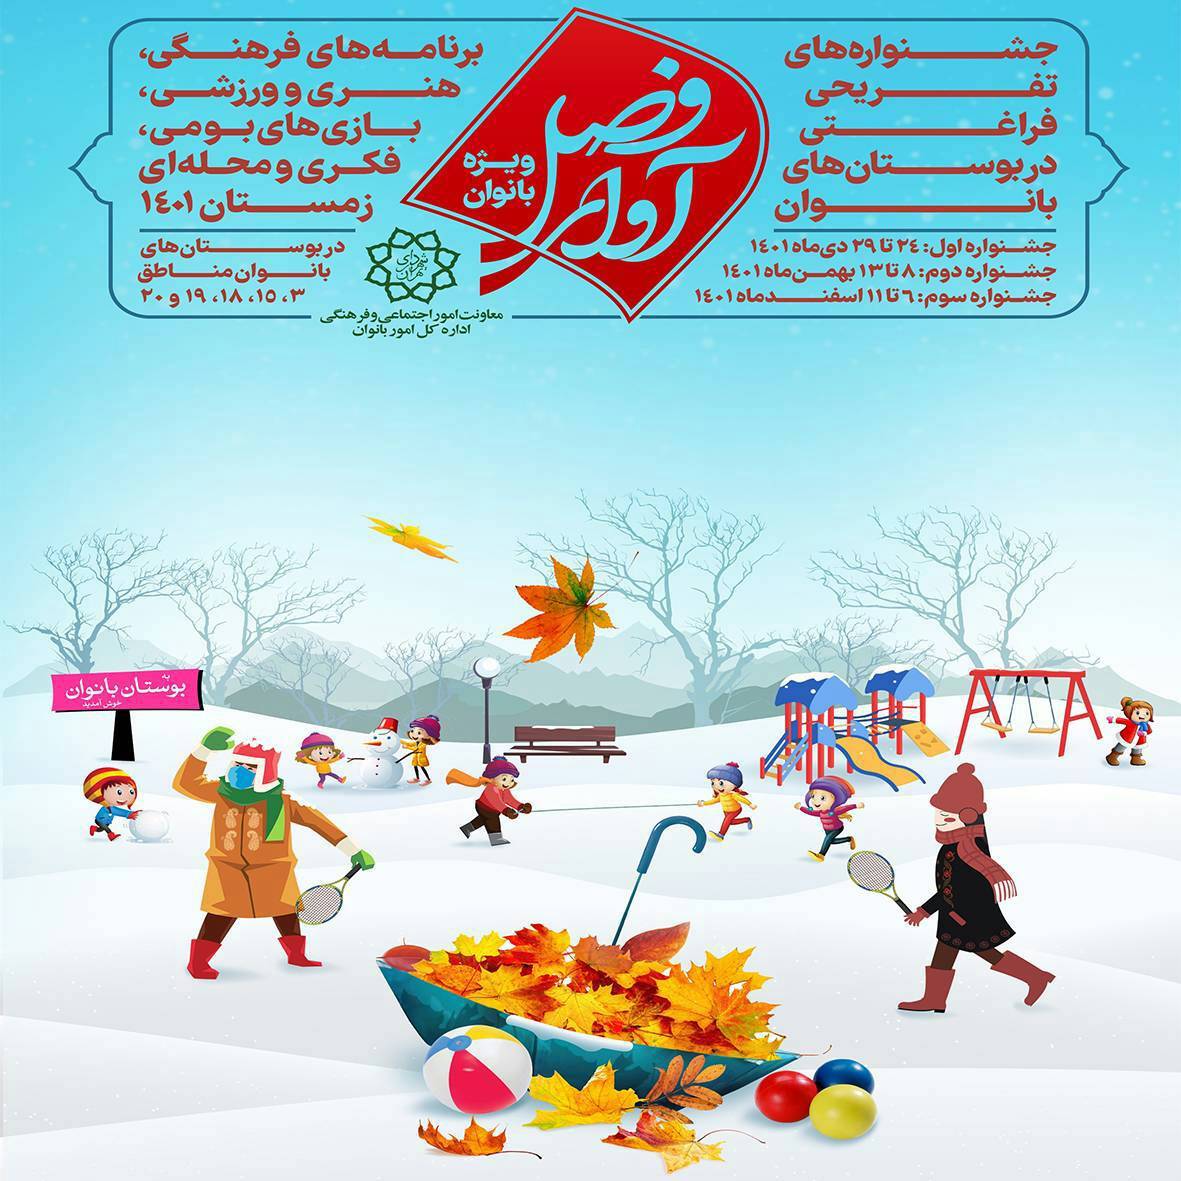 برپایی جشنواره زمستانی تفریحی فراغتی در بوستان بانوان منطقه ۱۹ پایتخت